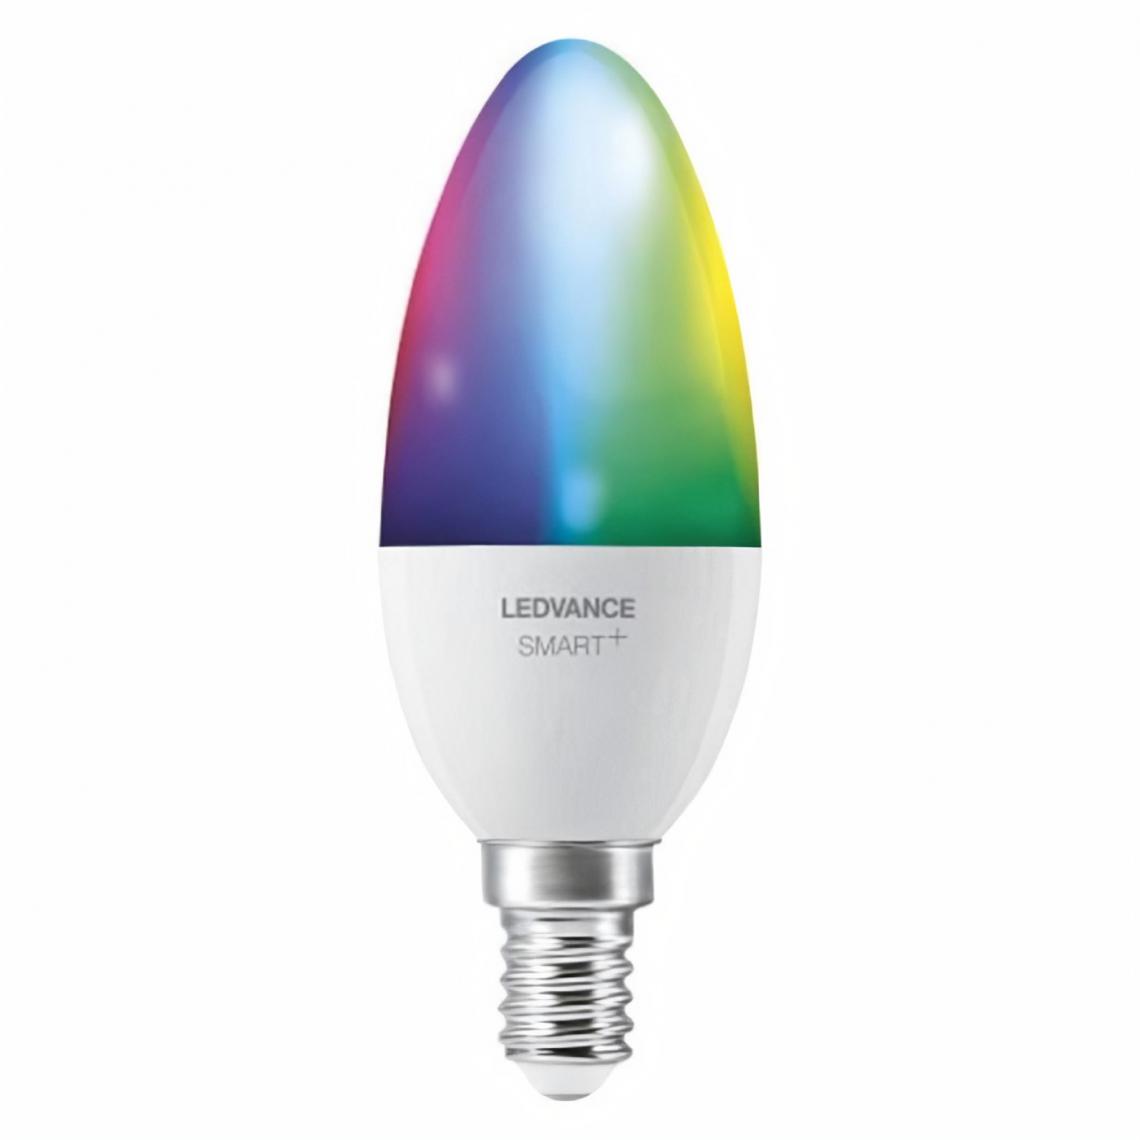 Ledvance - LEDVANCE BTE3 Ampoule Smart+ WIFI FLAMME DEPOLIE 40W E14/COULEUR CHANGEANTE - Lampe connectée